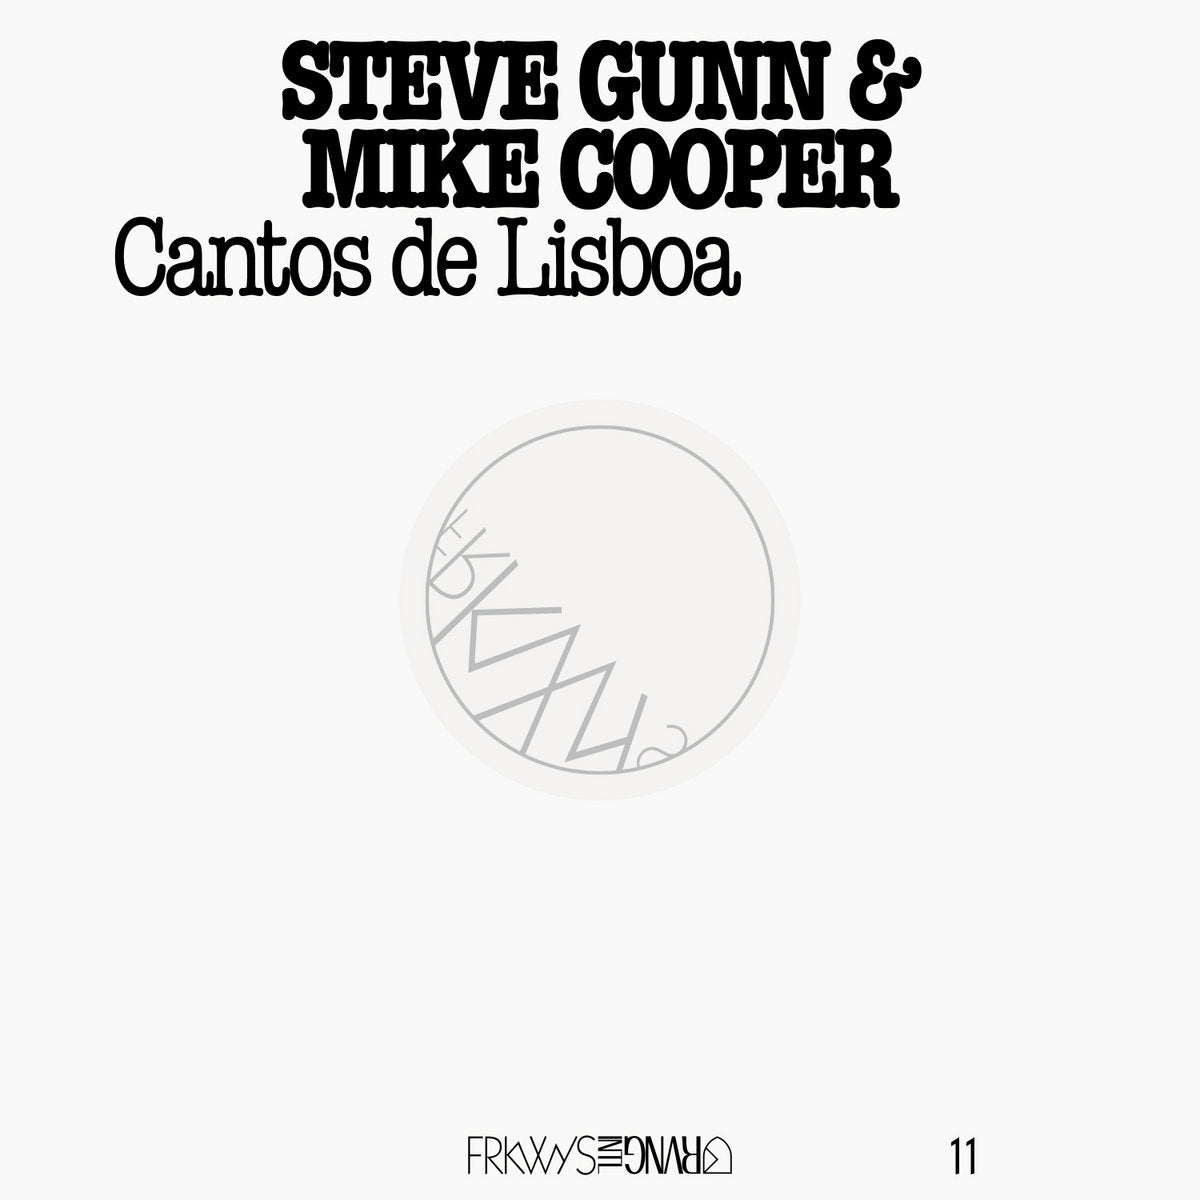 Steve Gunn & Mike Cooper - Cantos de Lisboa